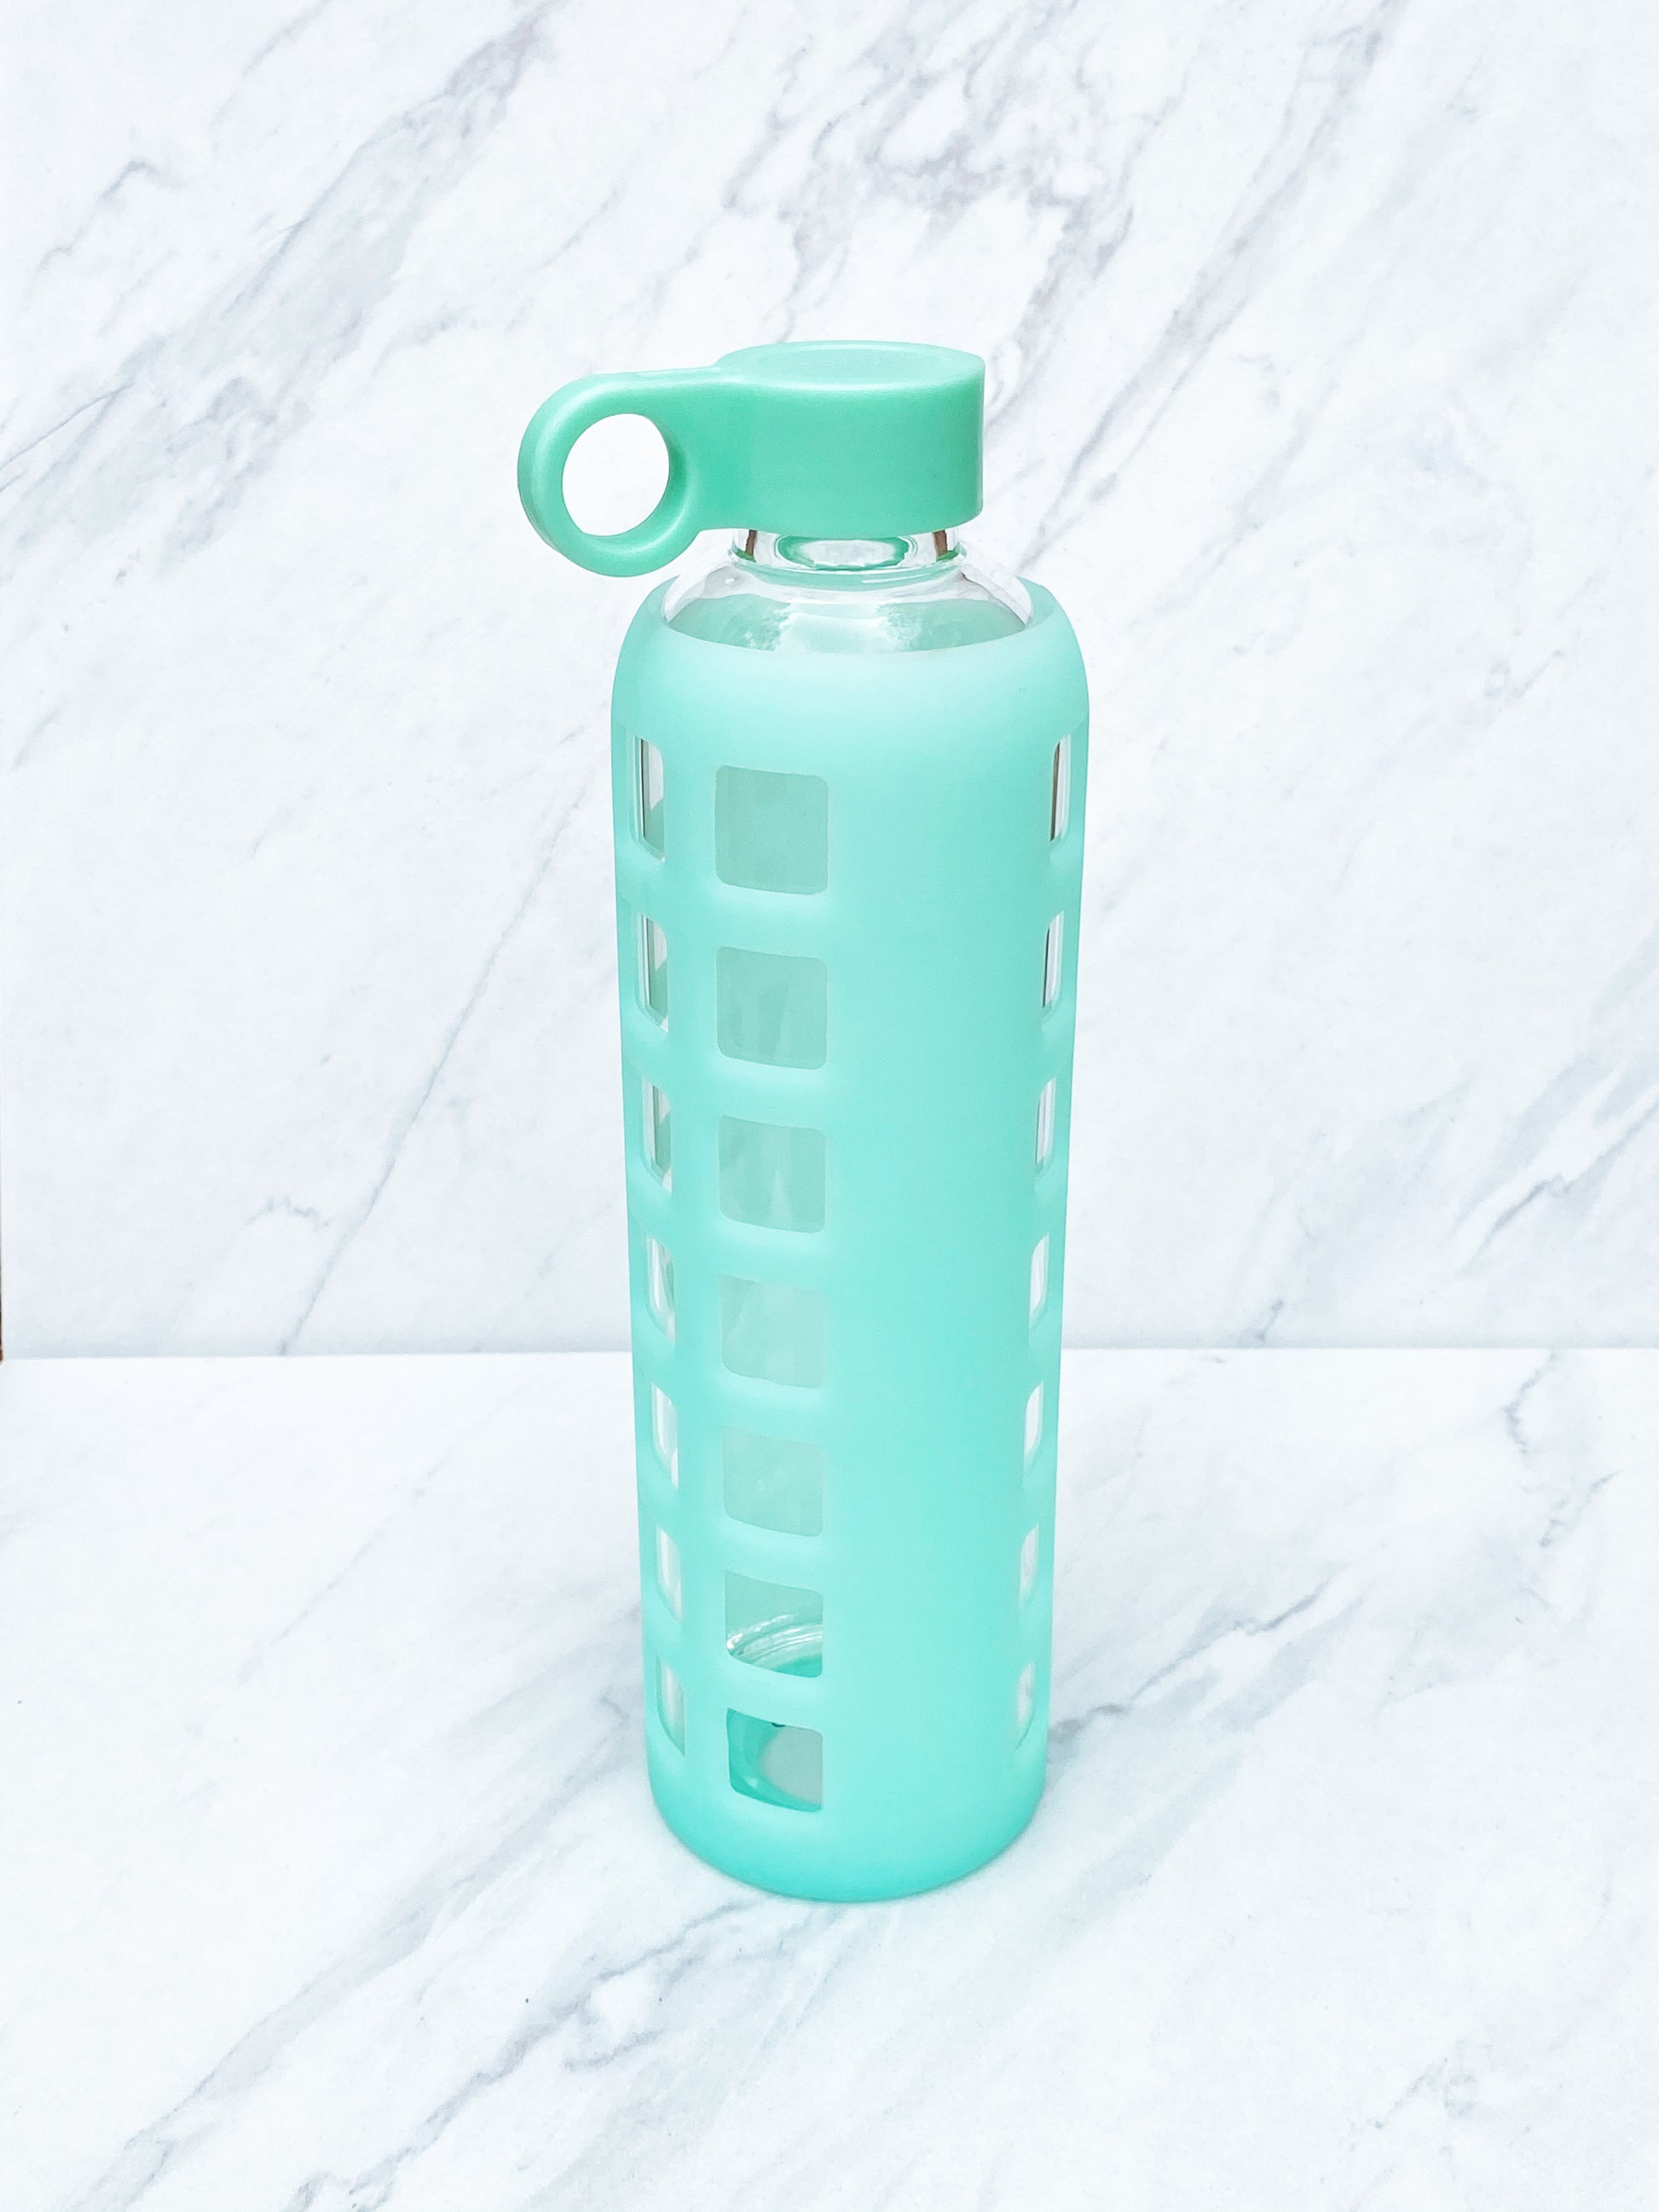 32oz Turquoise Bottle